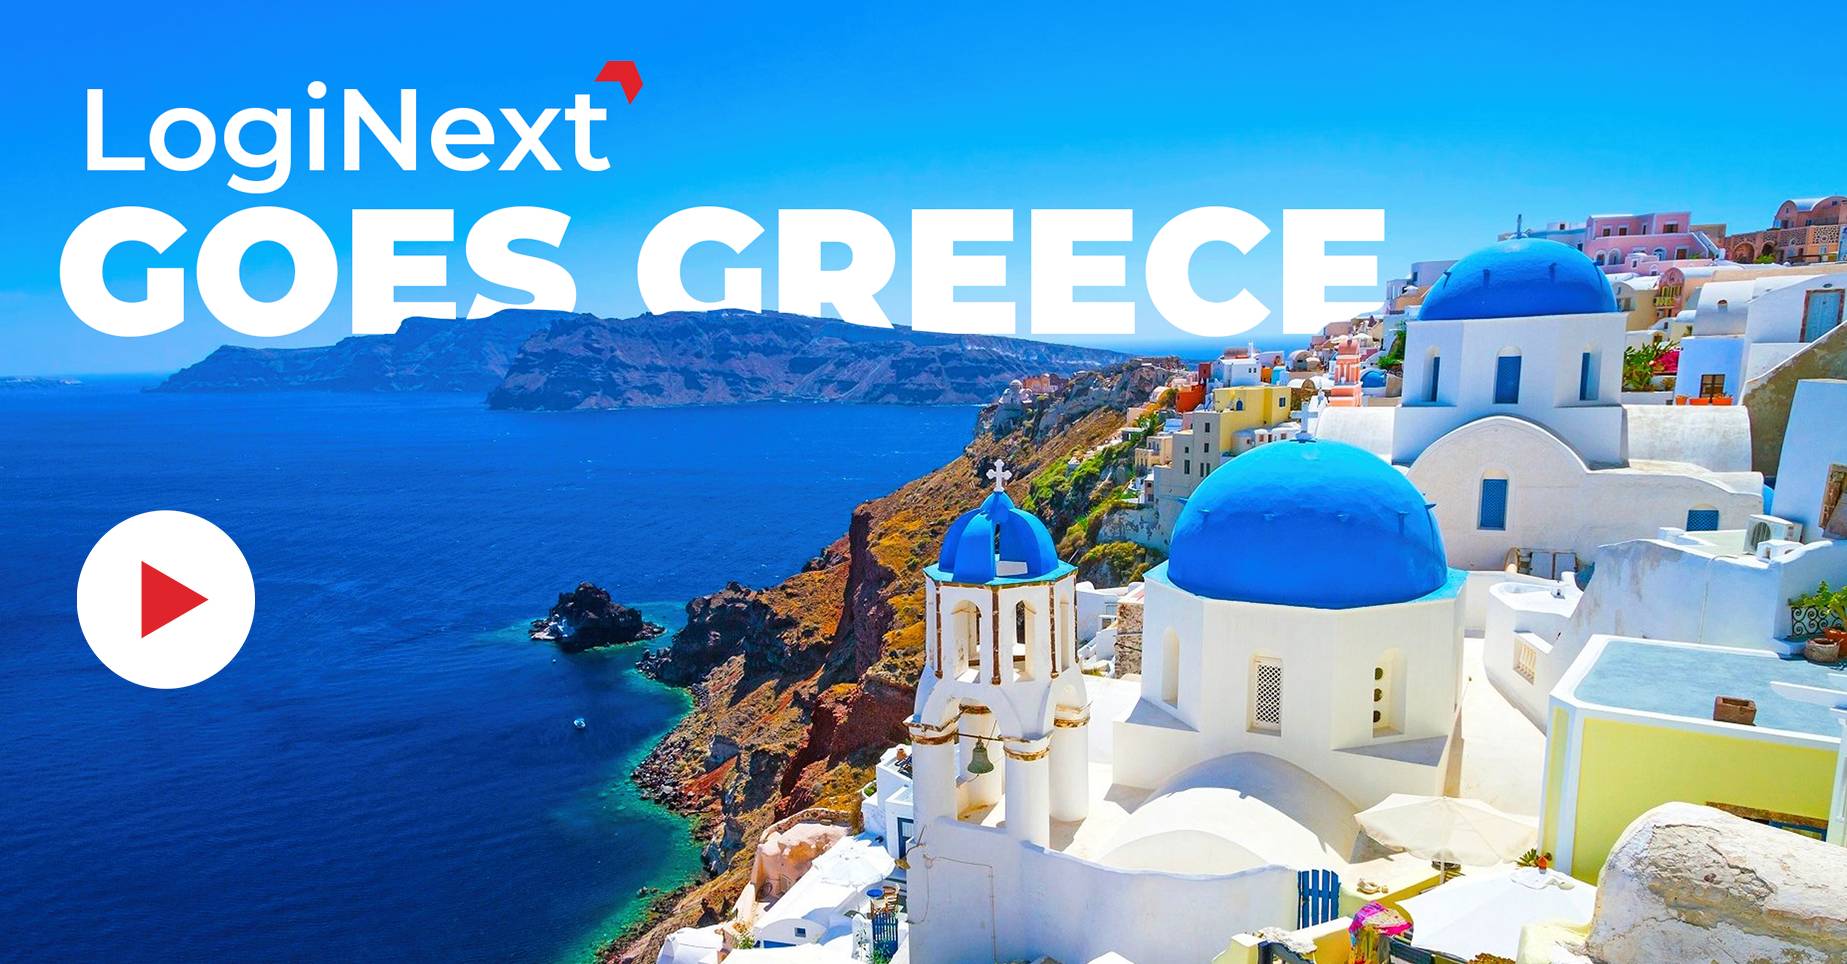 Січень 2023 р. – LogiNext переходить до Греції